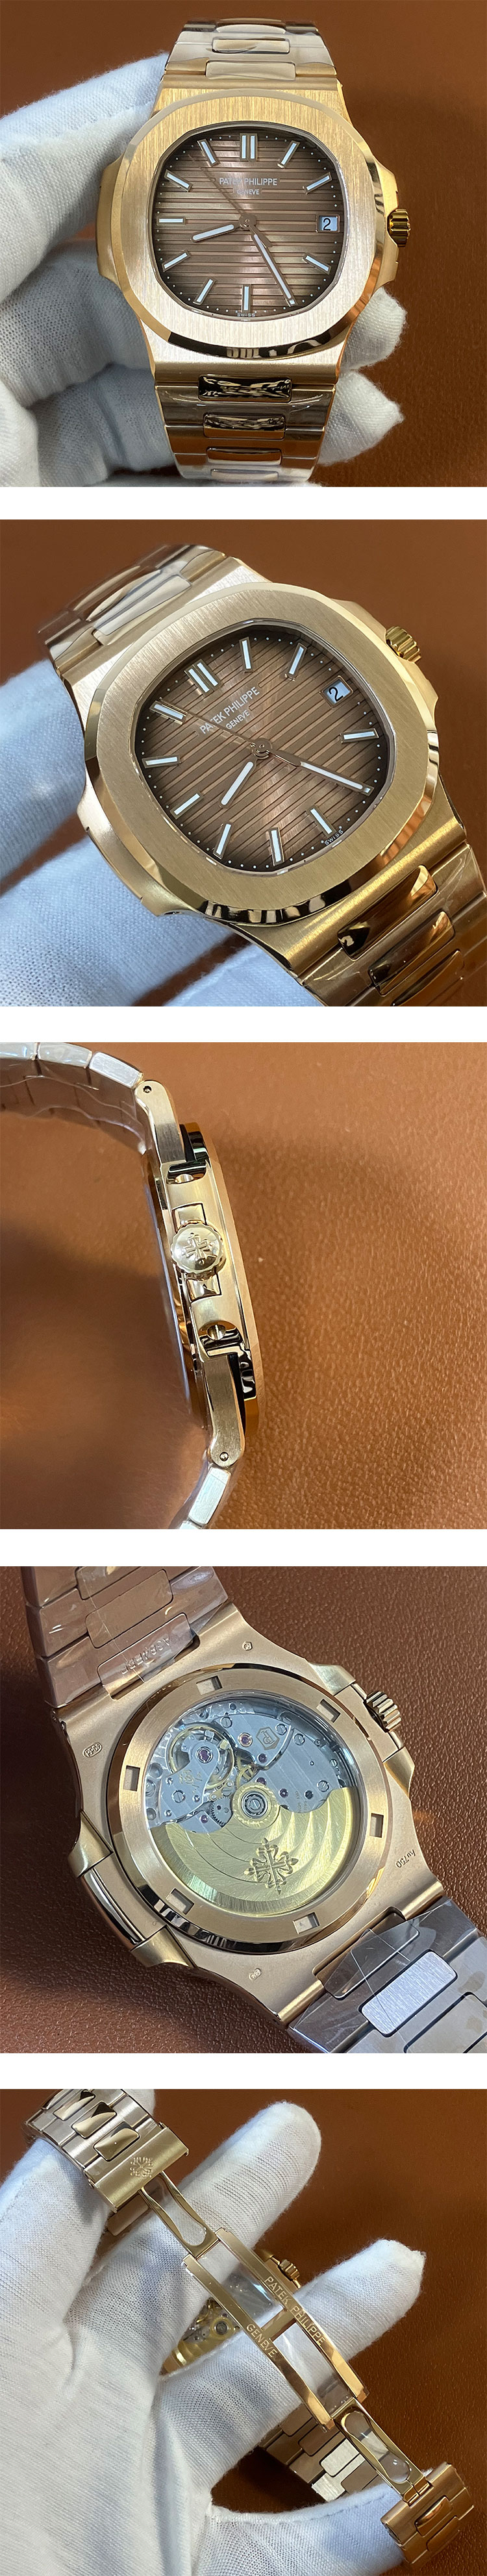 3K製最高精密 パテック・フィリップスーパーコピー時計 ノーチラス 5711/1R-001 チョコレート 池袋老舗